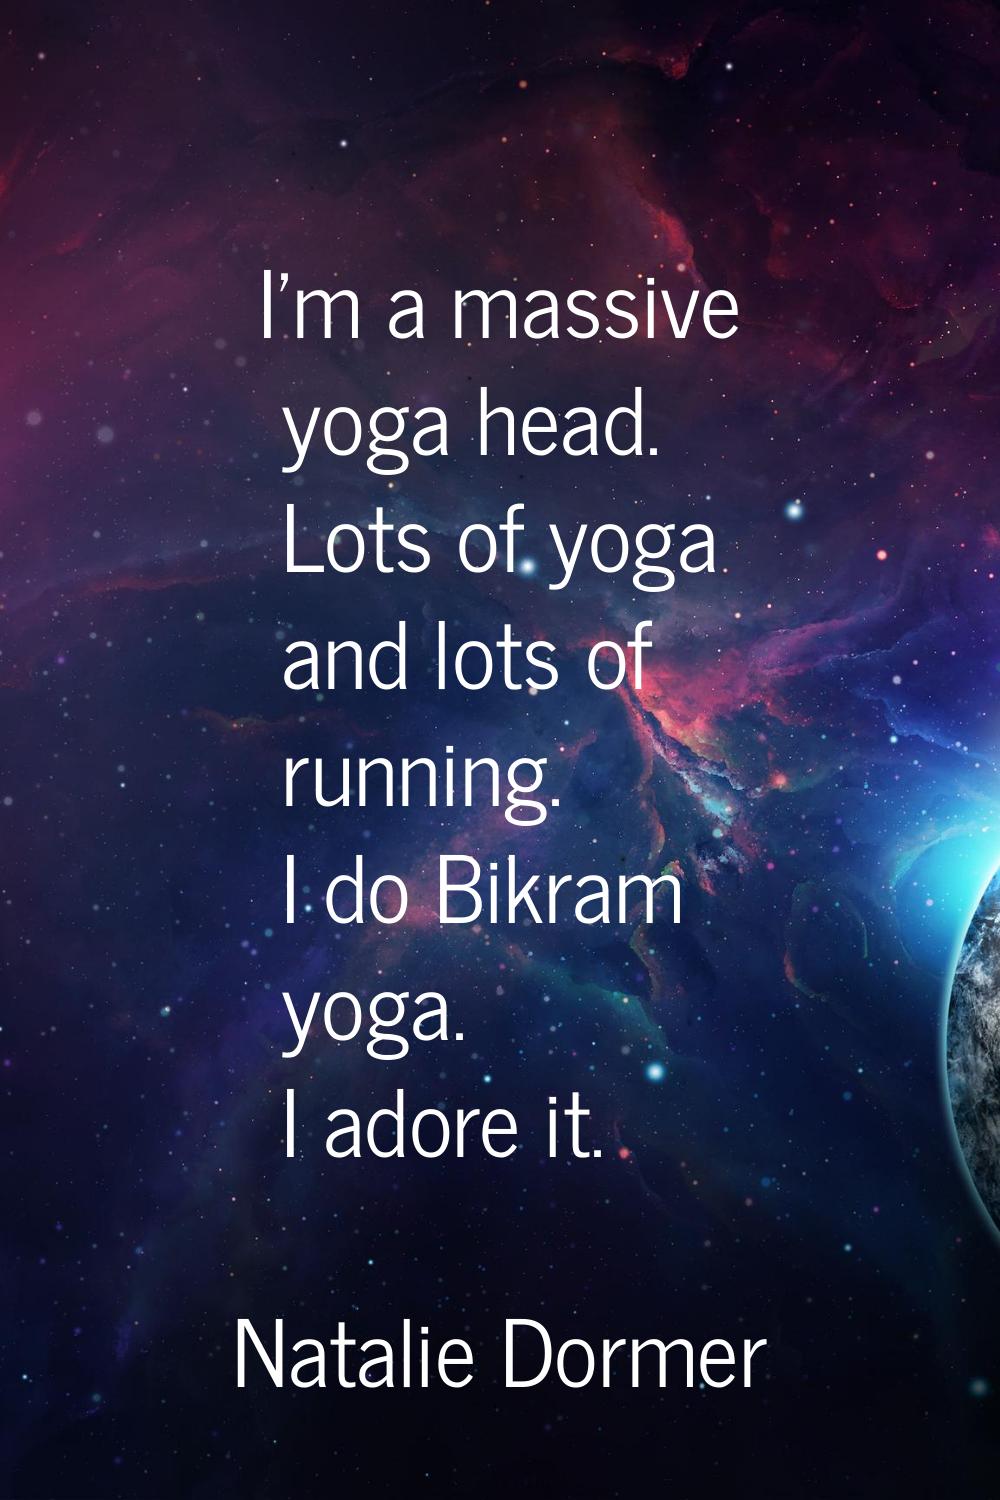 I'm a massive yoga head. Lots of yoga and lots of running. I do Bikram yoga. I adore it.